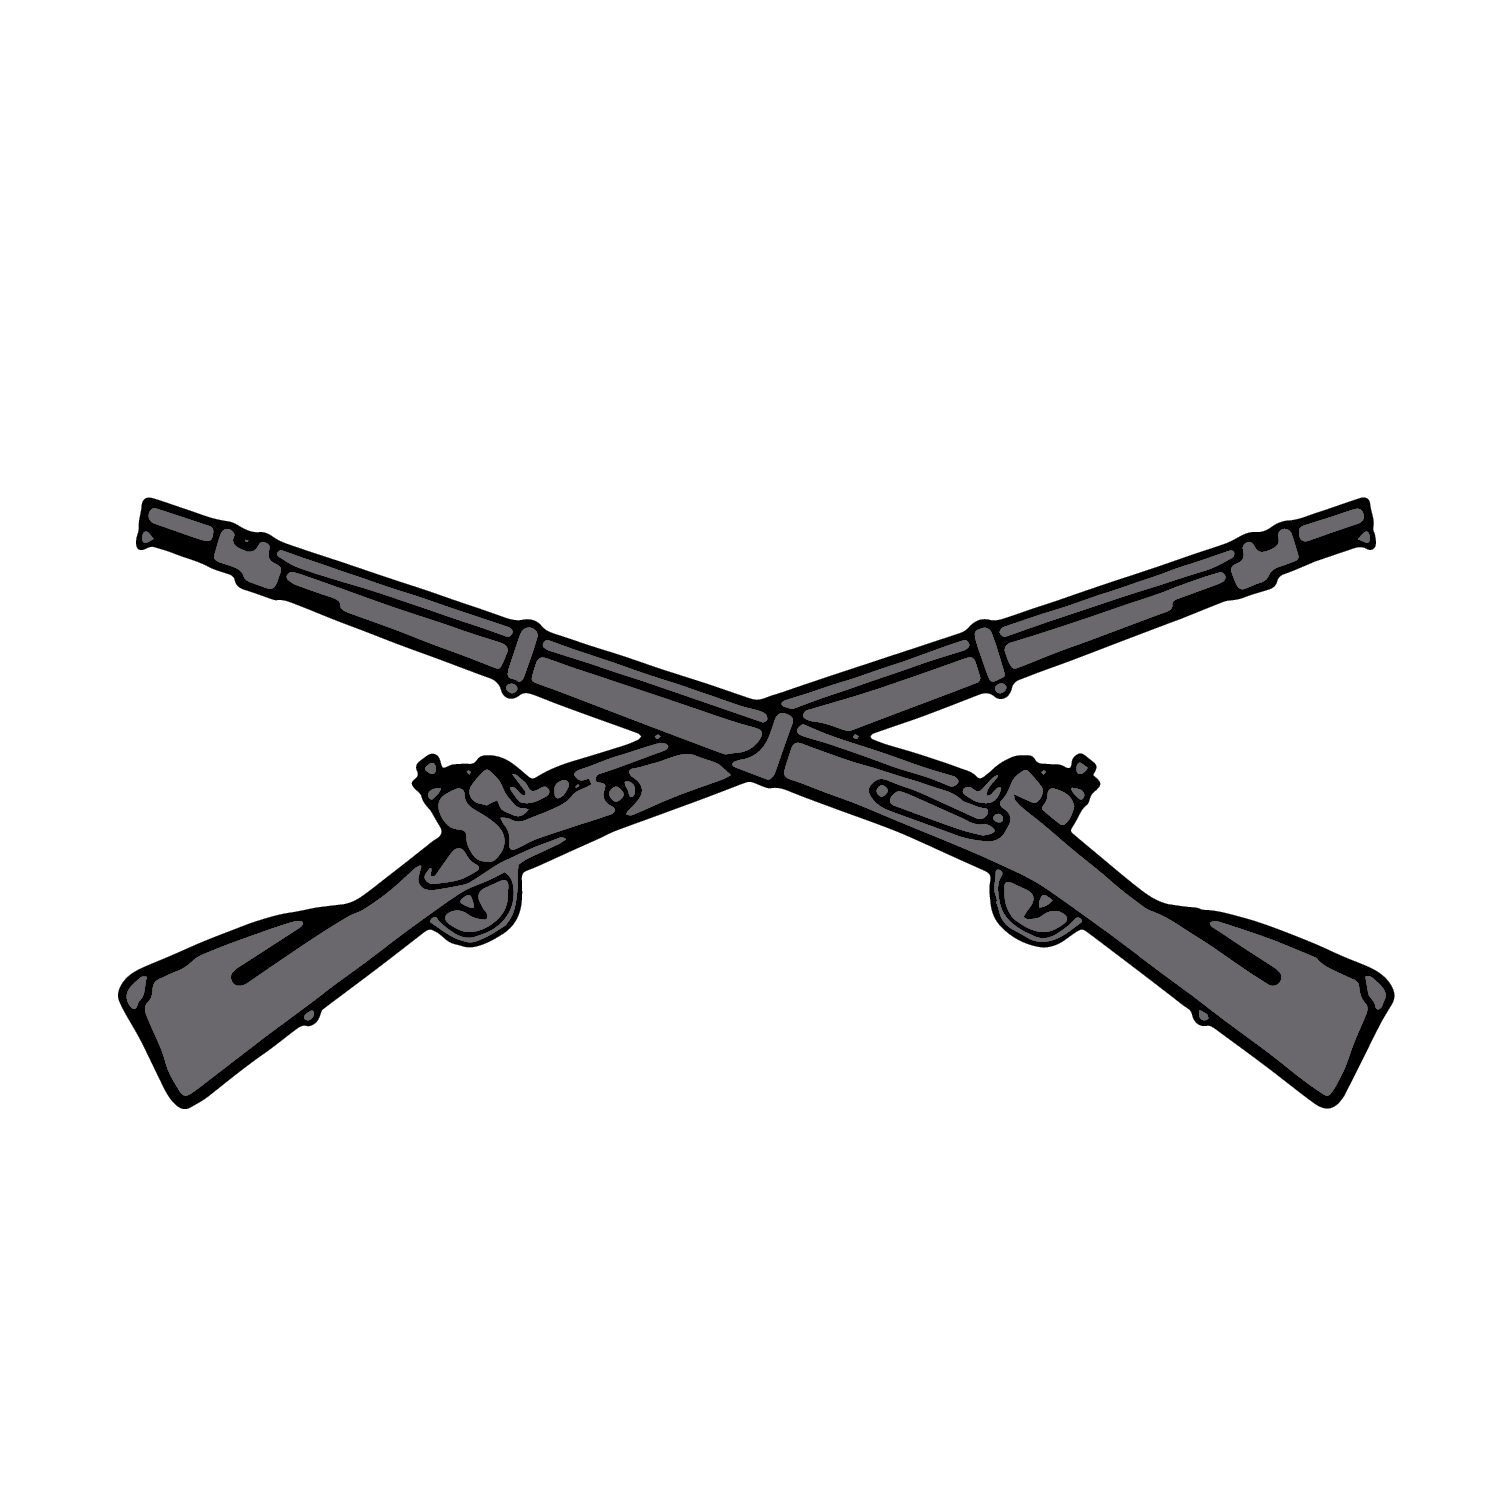 B Co, 2-113 IN "Bastard Company"